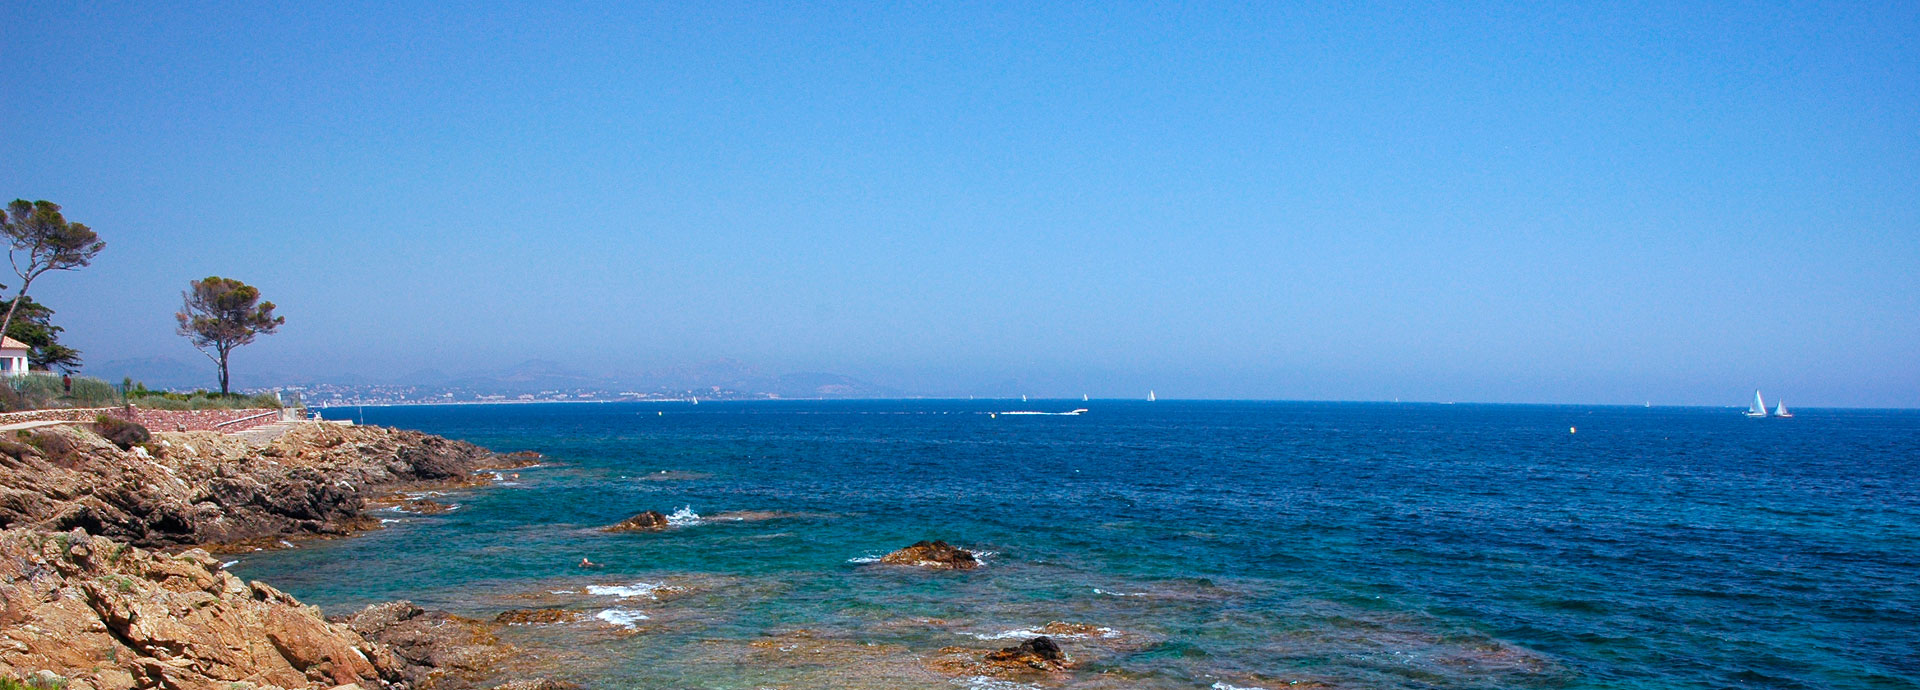 Alquiler vacaciones bajo el sol del Mediterráneo : Coralia vacances